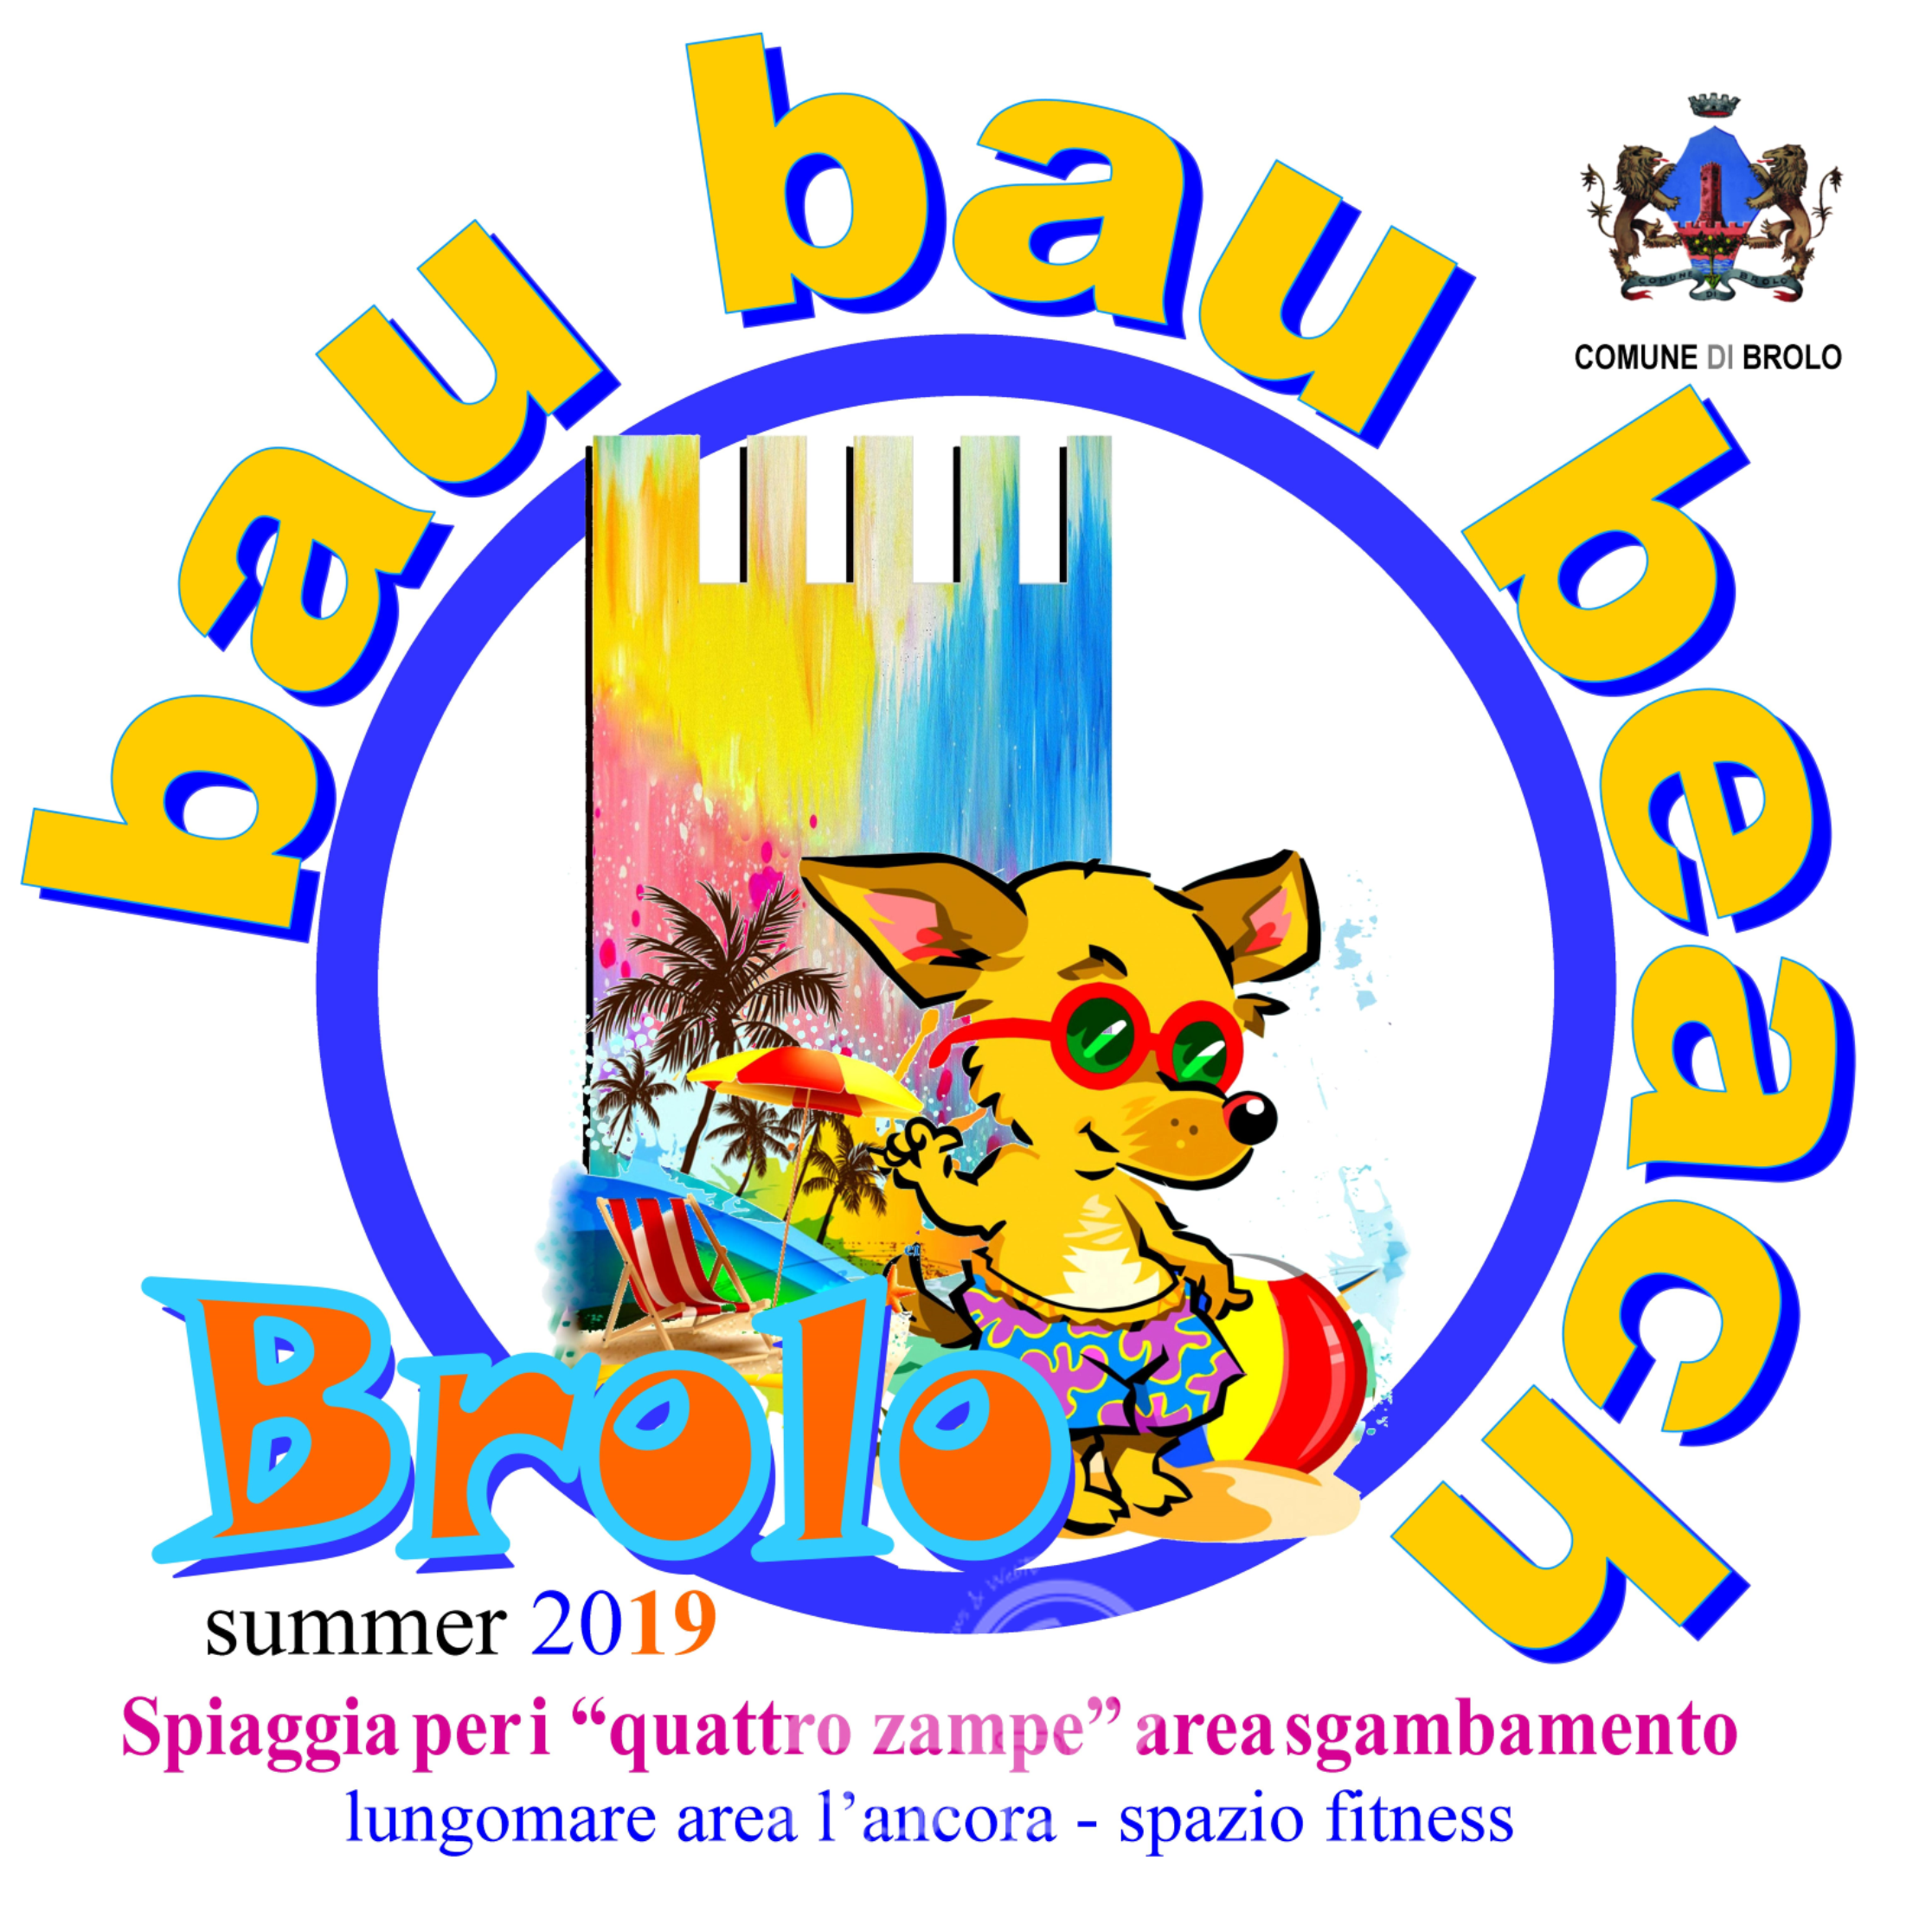 Brolo – Ora c’è la Bau Bau Beach. In Sicilia, l’unica spiaggia libera comunale per i cani